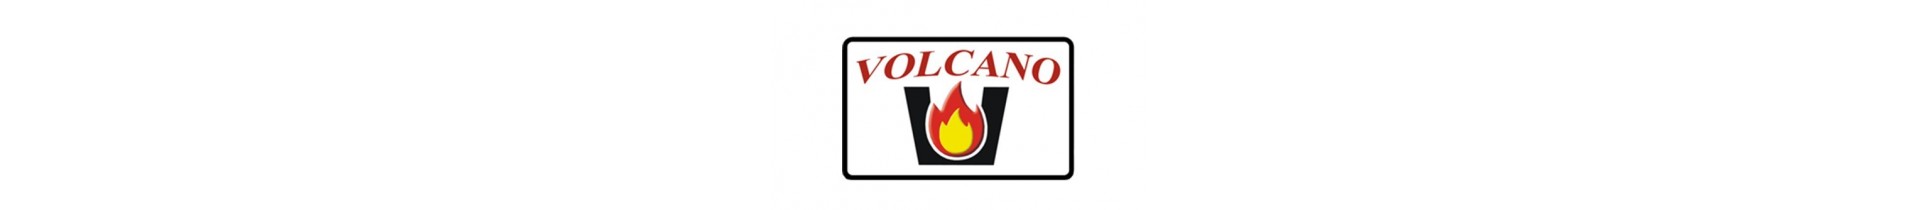 Κασέτες τζακιού Volcano